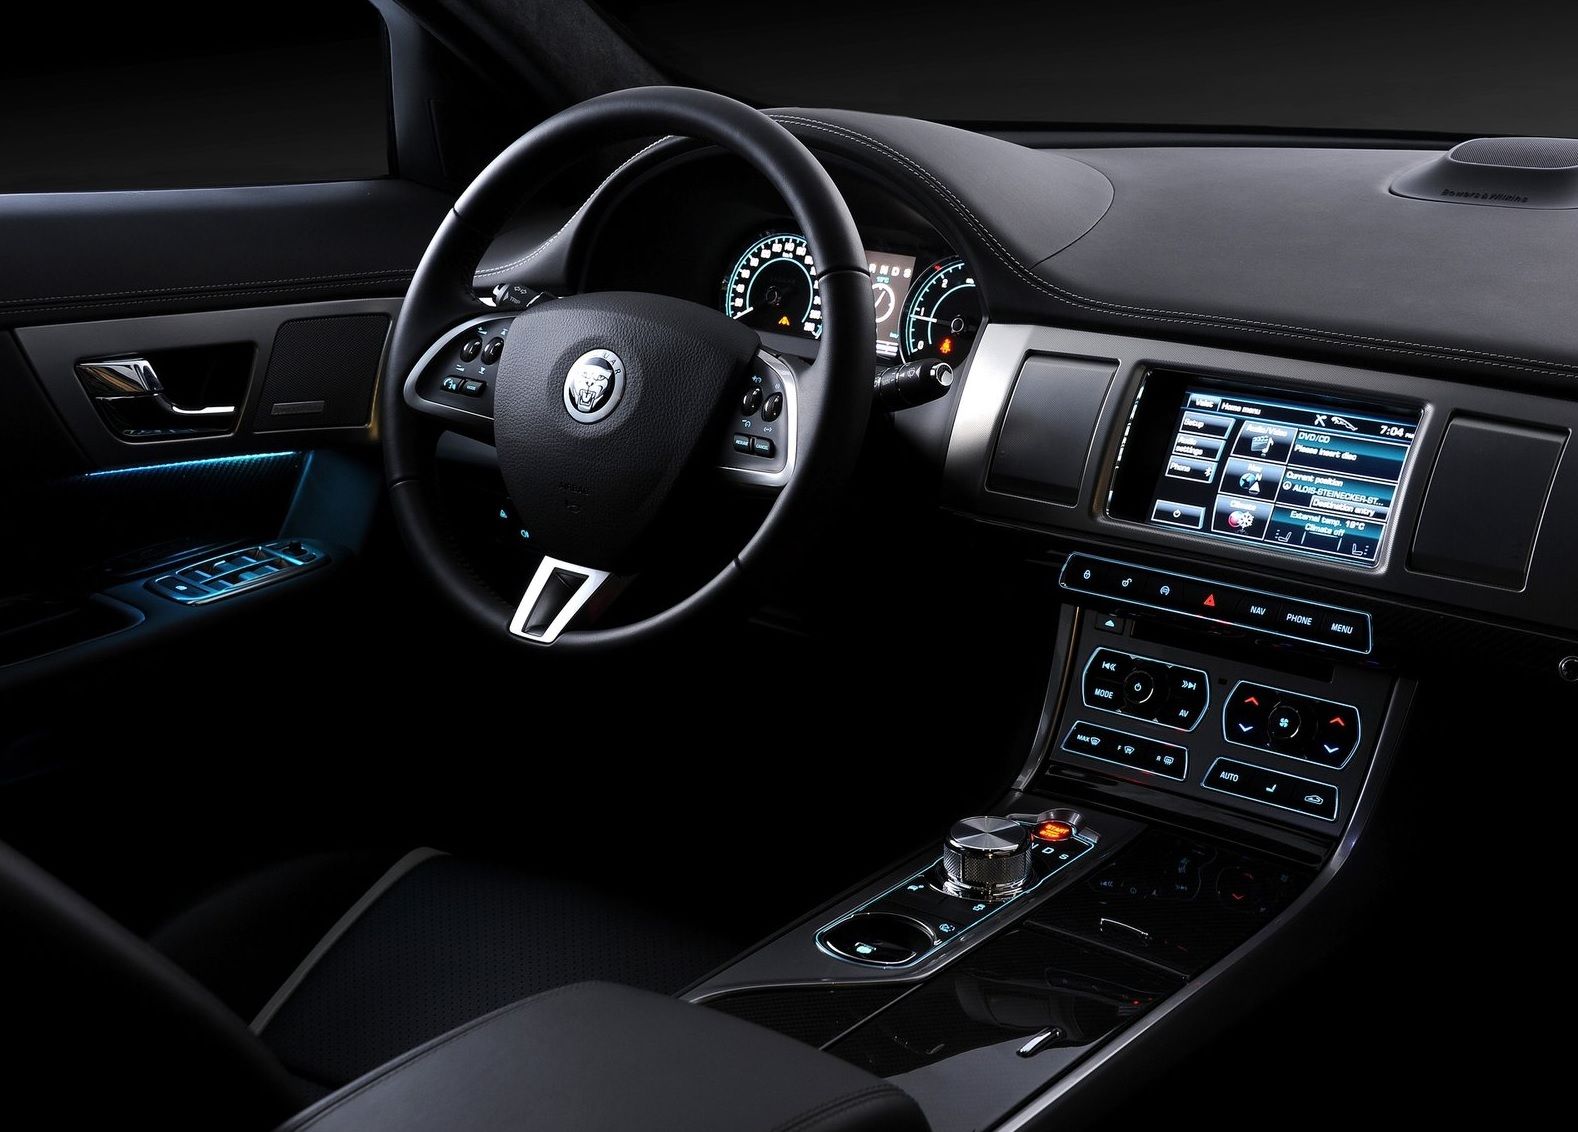 2012 Jaguar XF Interior Driver's Cockpit